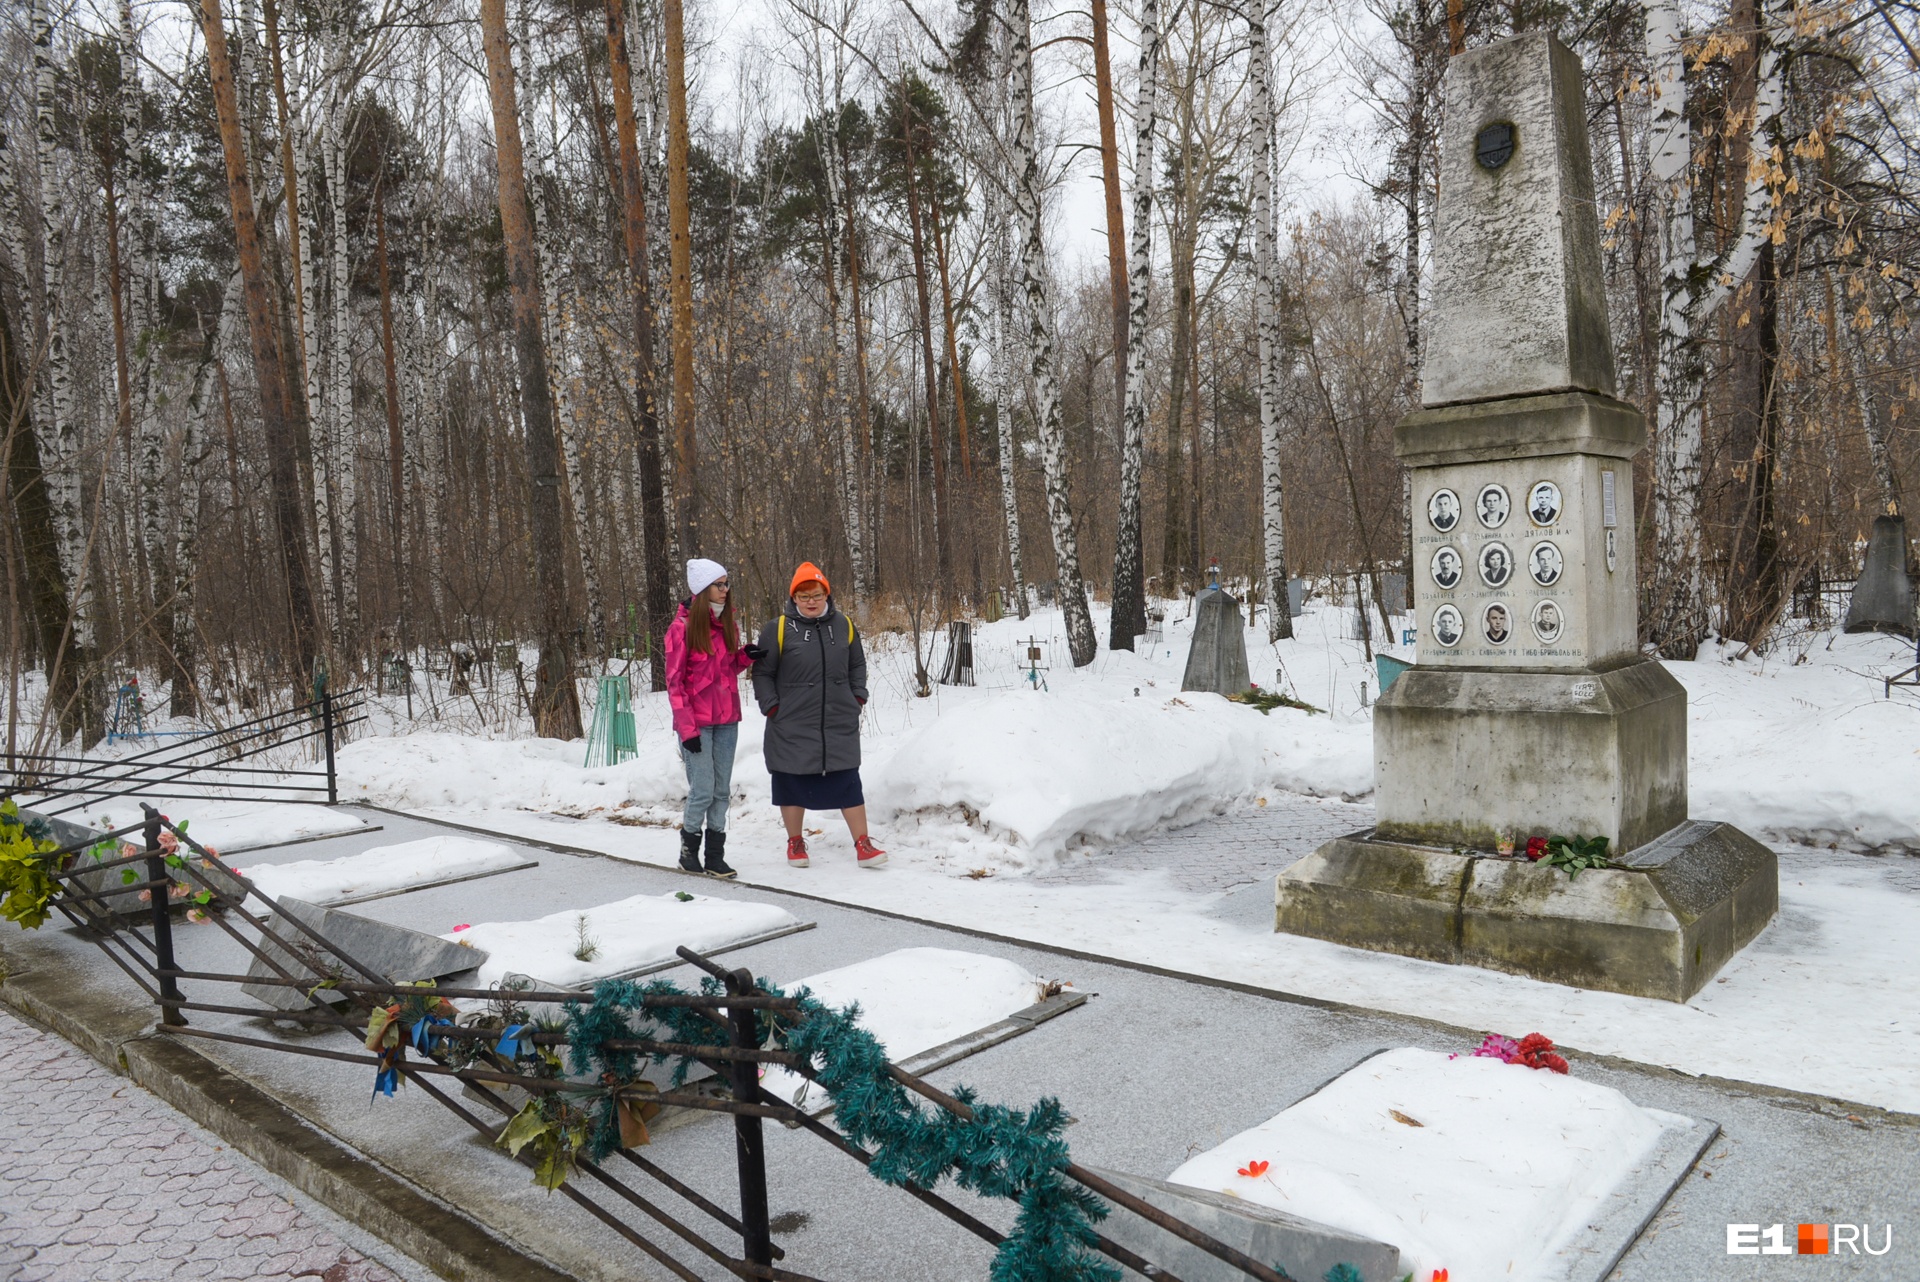 Мемориал дятловцам, пожалуй, самый известный на кладбище